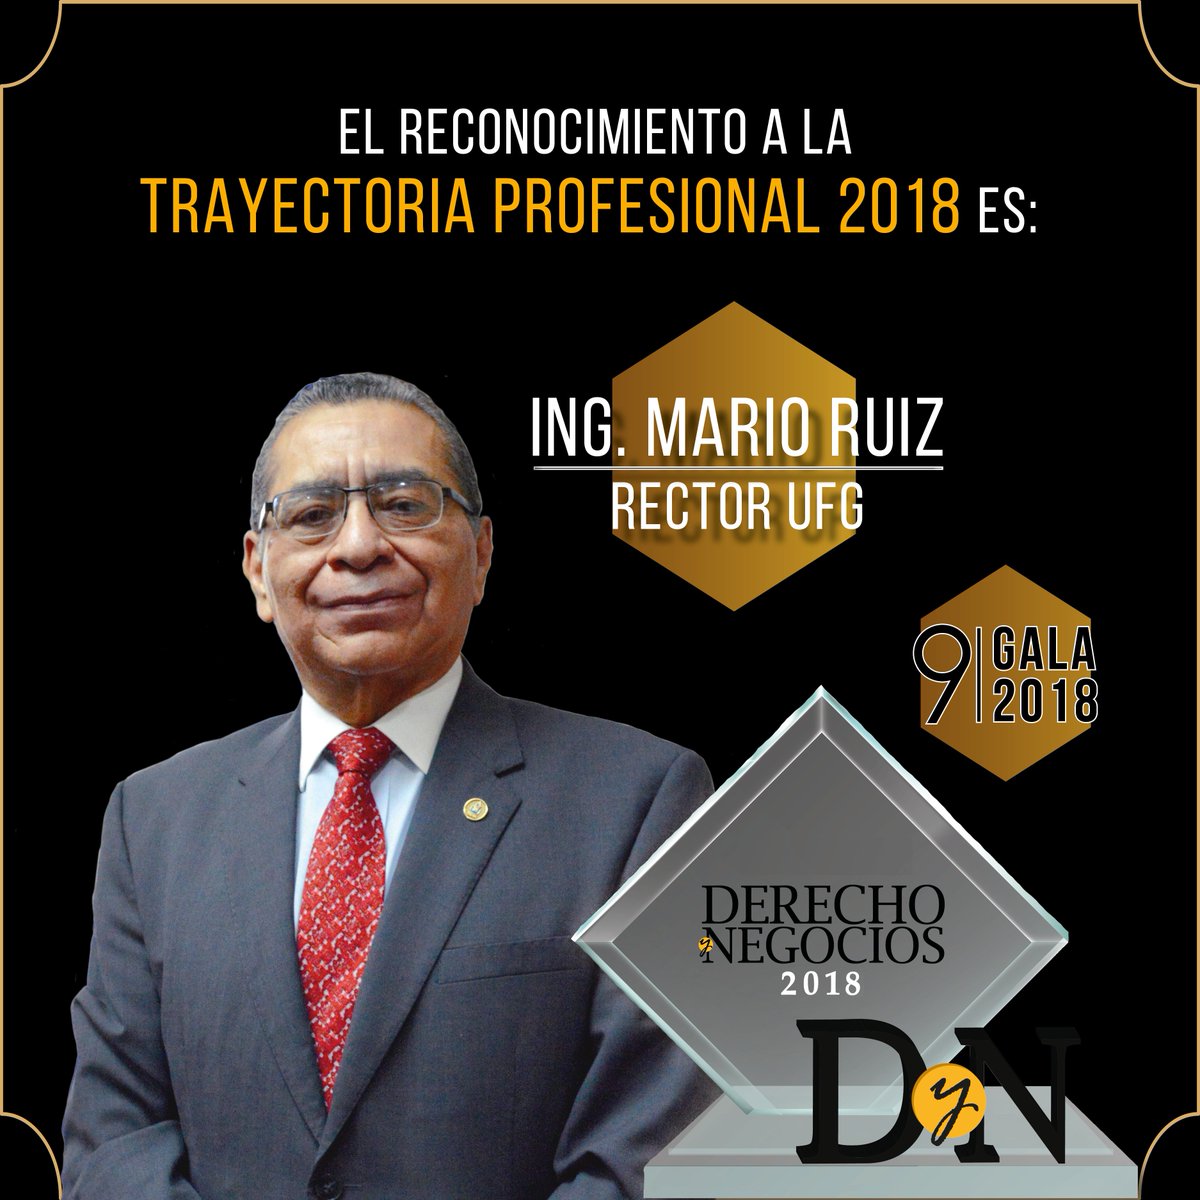 #Gala2018 #Reconocimiento #TrayectoriaProfesional #IngenieroMarioRuiz #DyN

Nos complace presentar al galardonado al reconocimiento a la 'Trayectoria Profesional 2018' el Ingeniero Mario Ruiz, Rector de la Universidad Francisco Gavidia.